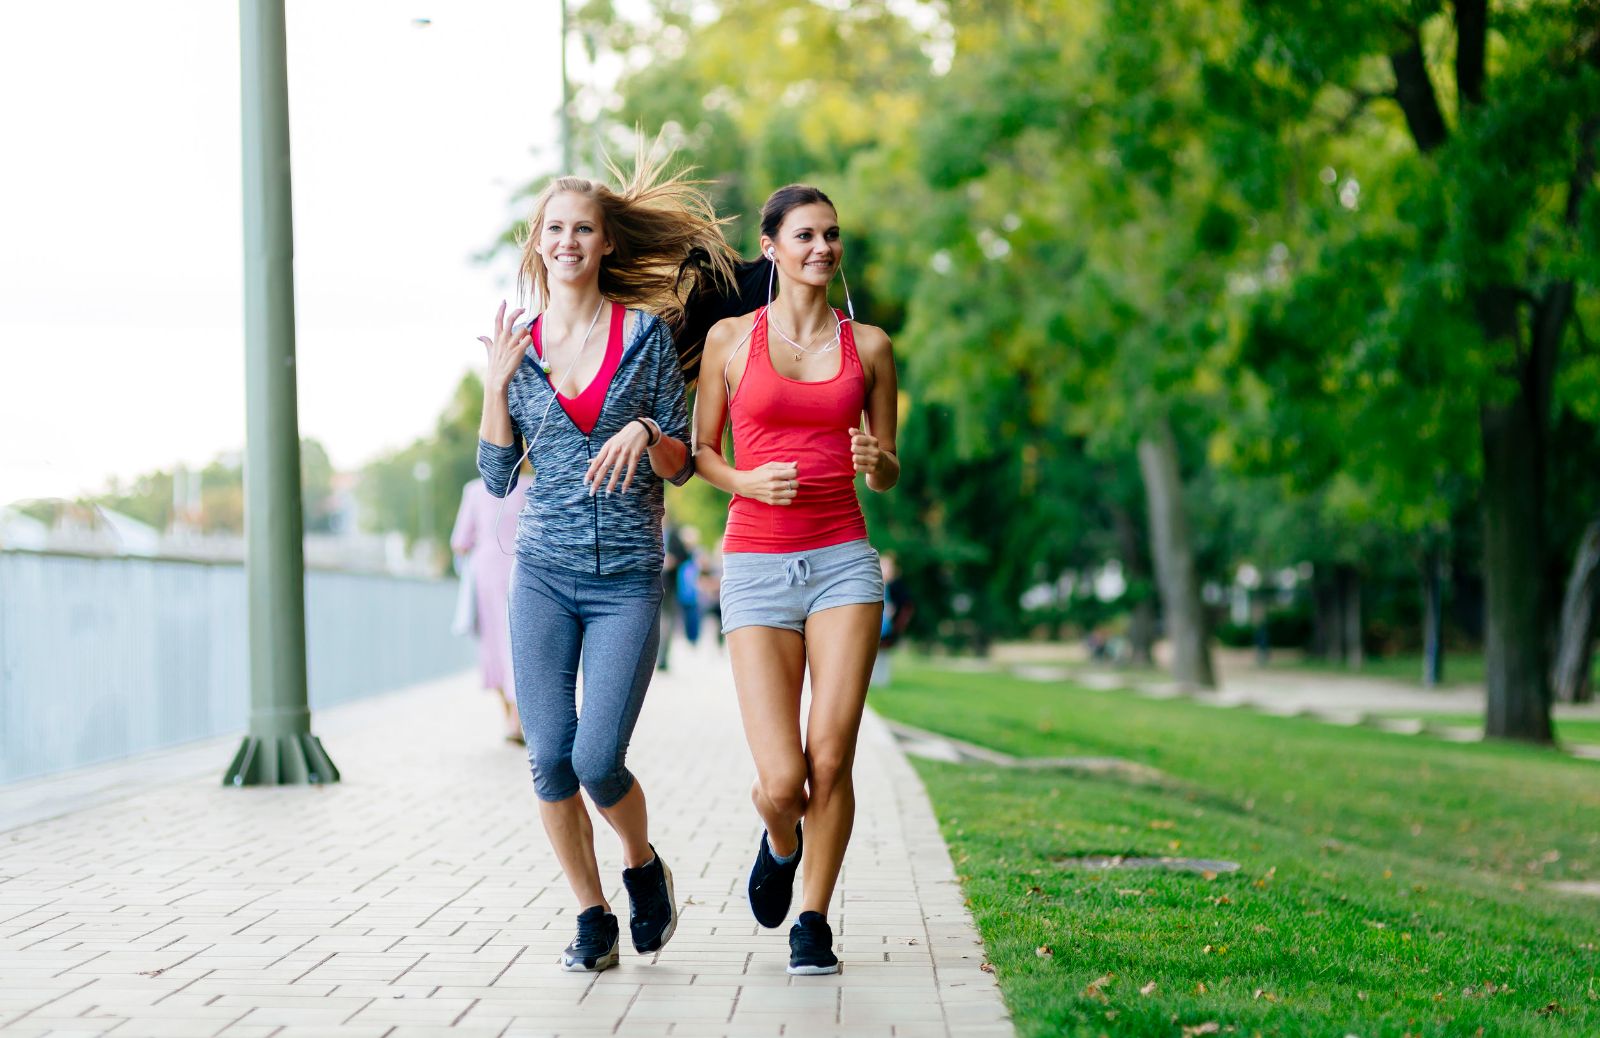 Come fare jogging: per iniziare